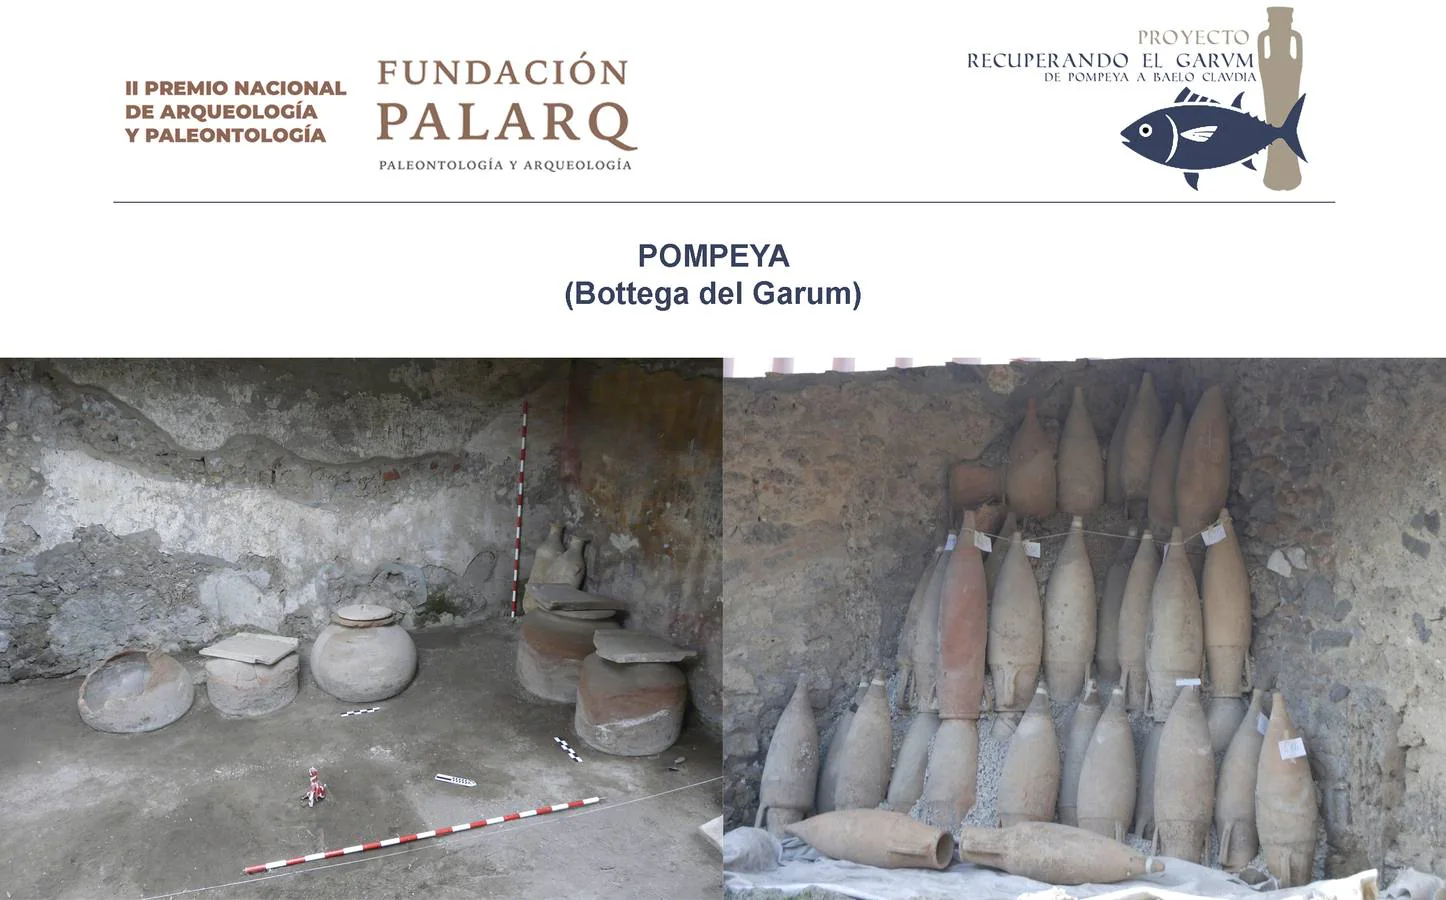 El garum, el maravilloso manjar del Cádiz romano, opta al Premio Nacional de Arqueología